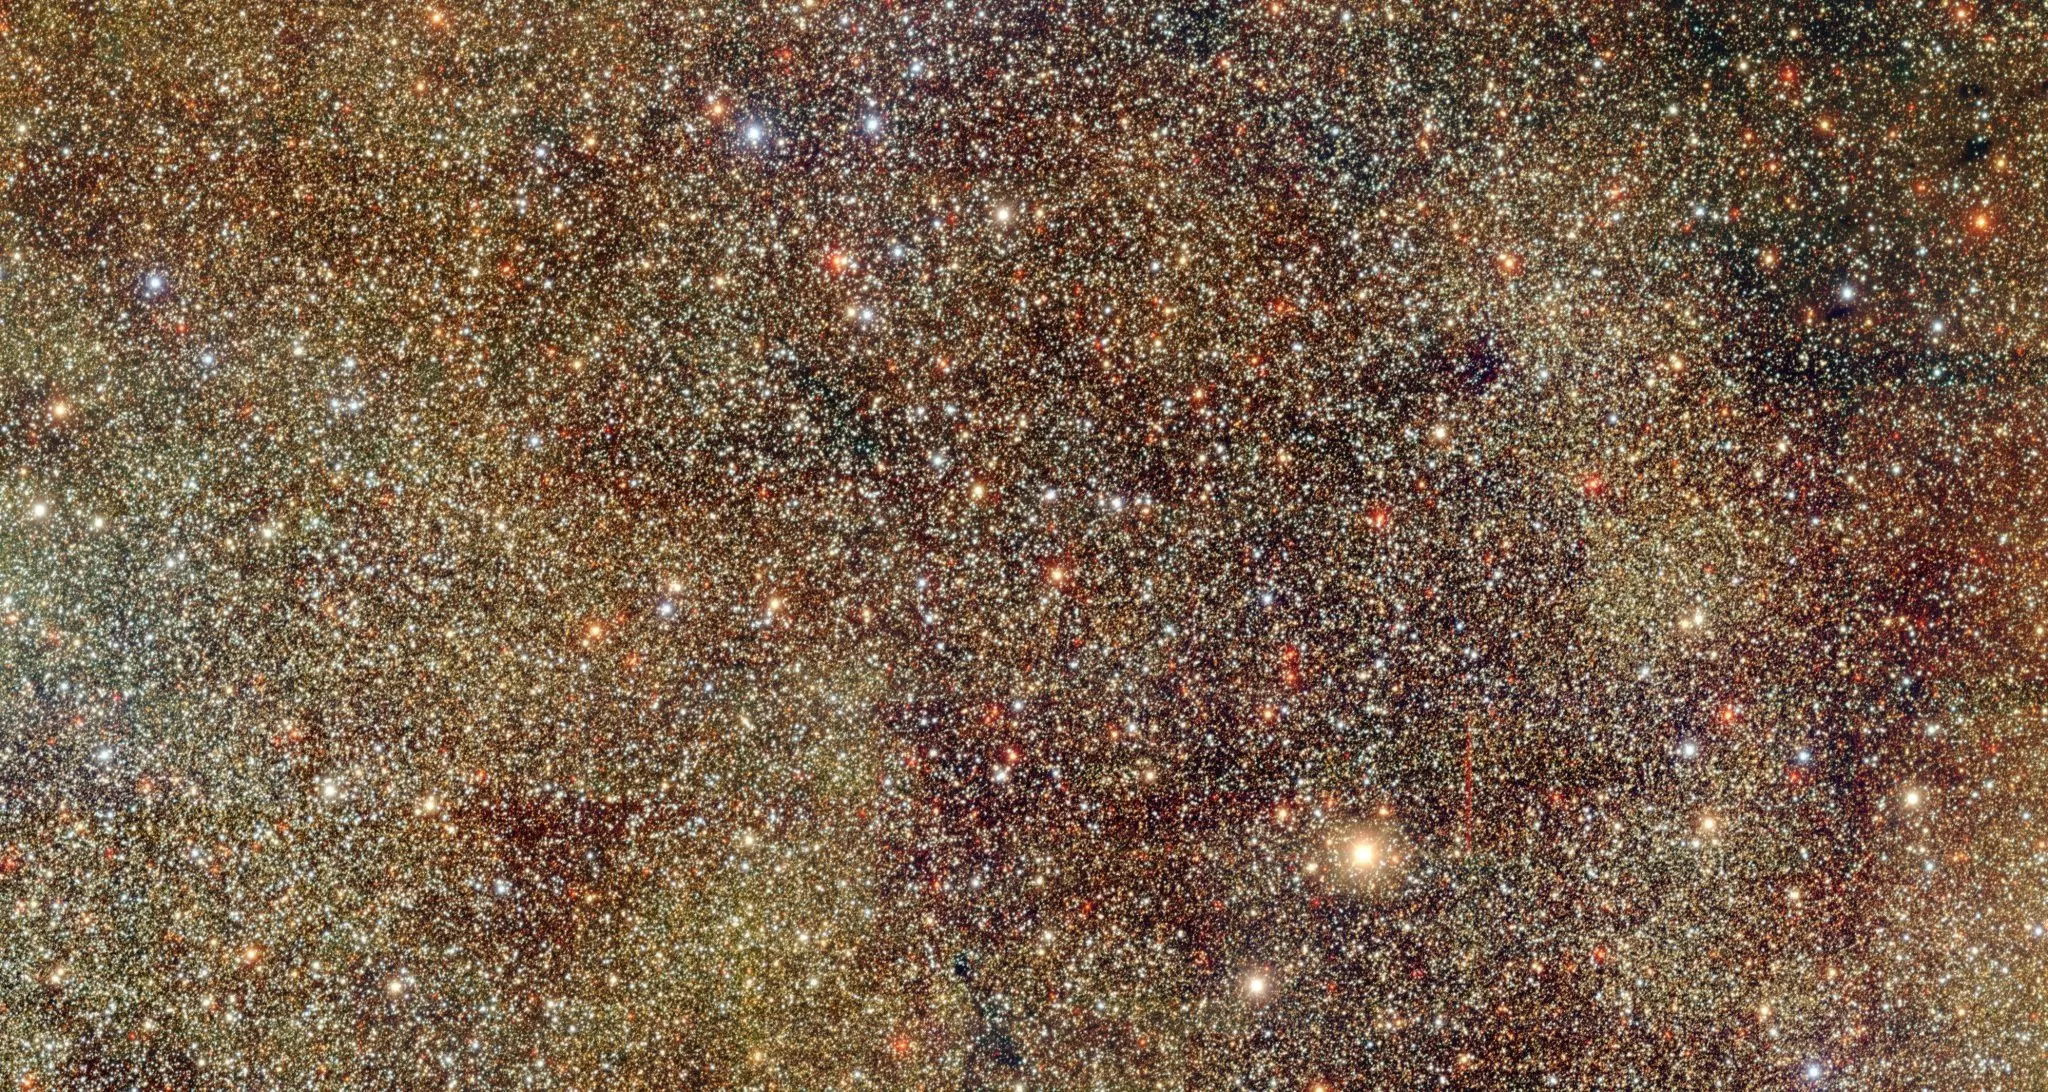 Mlijecna staza - bilijuni zvijezda (Curiosmos)